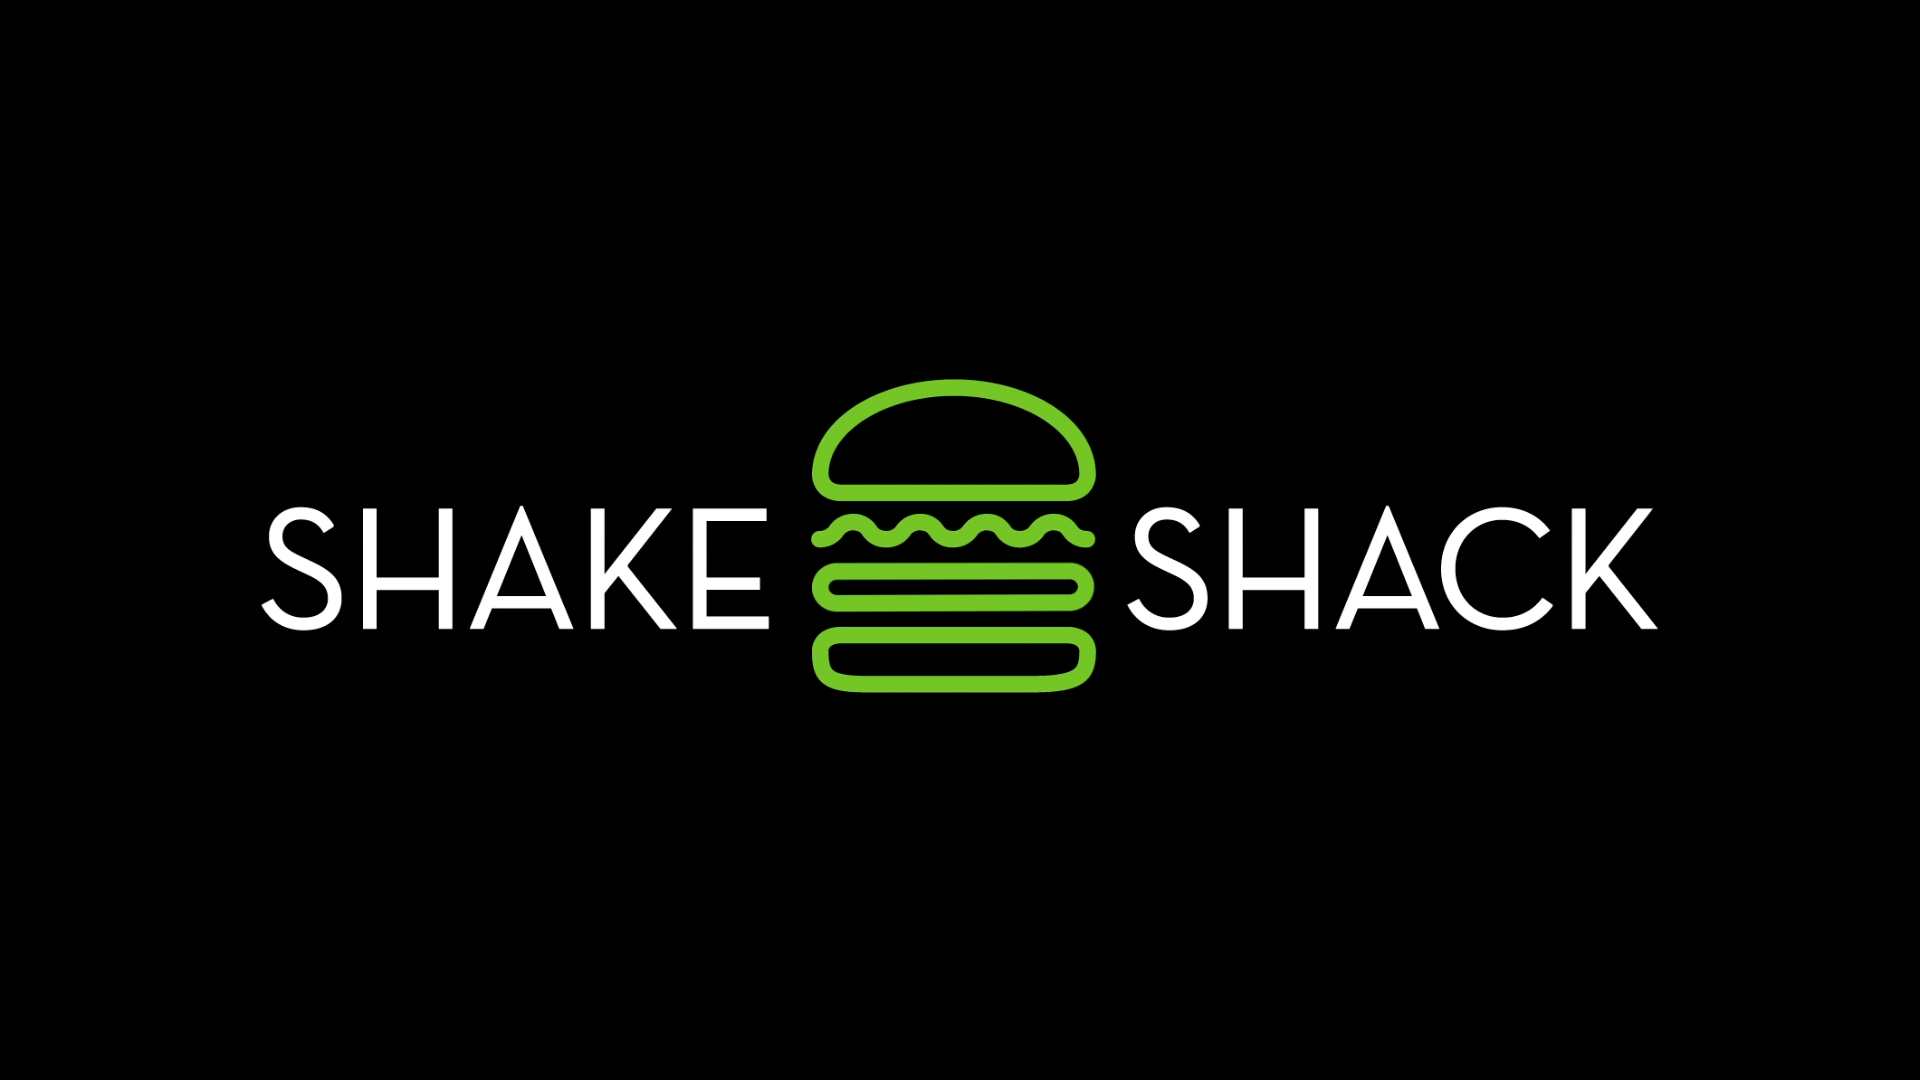 shake shack logo on black background